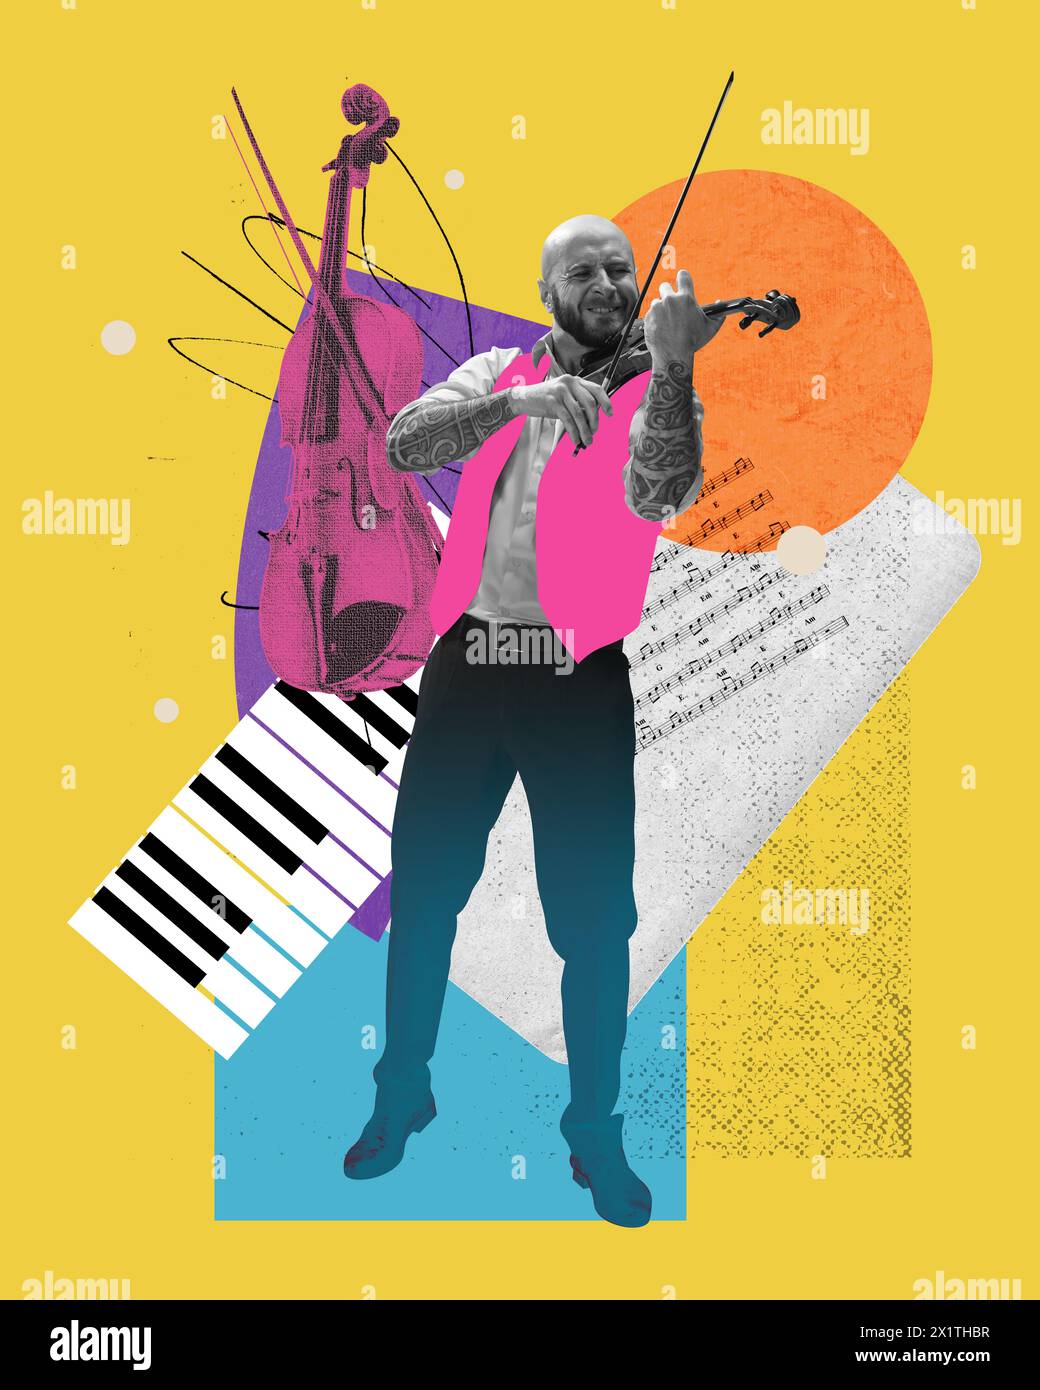 Homme chauve élégant avec des tatouages jouant du violon sur fond lumineux abstrait avec des notes. Collage d'art contemporain. Banque D'Images